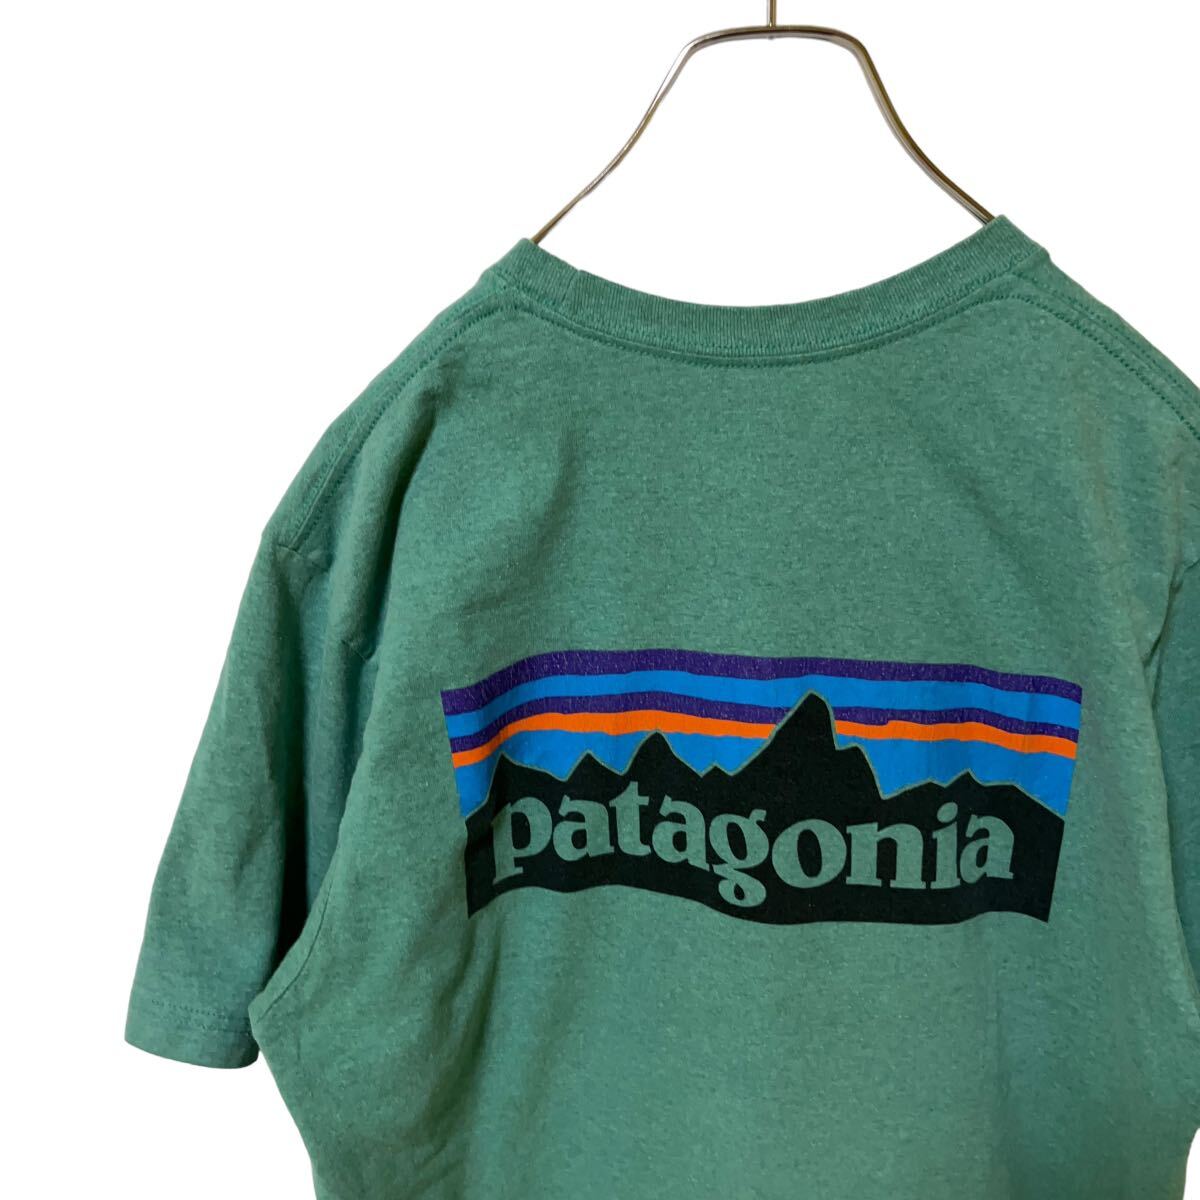 1 パタゴニア M アメリカ古着 メキシコ製 バックプリント リサイクルコットン ポリ混 半袖 Tシャツ グリーン  patagonia メンズの画像1